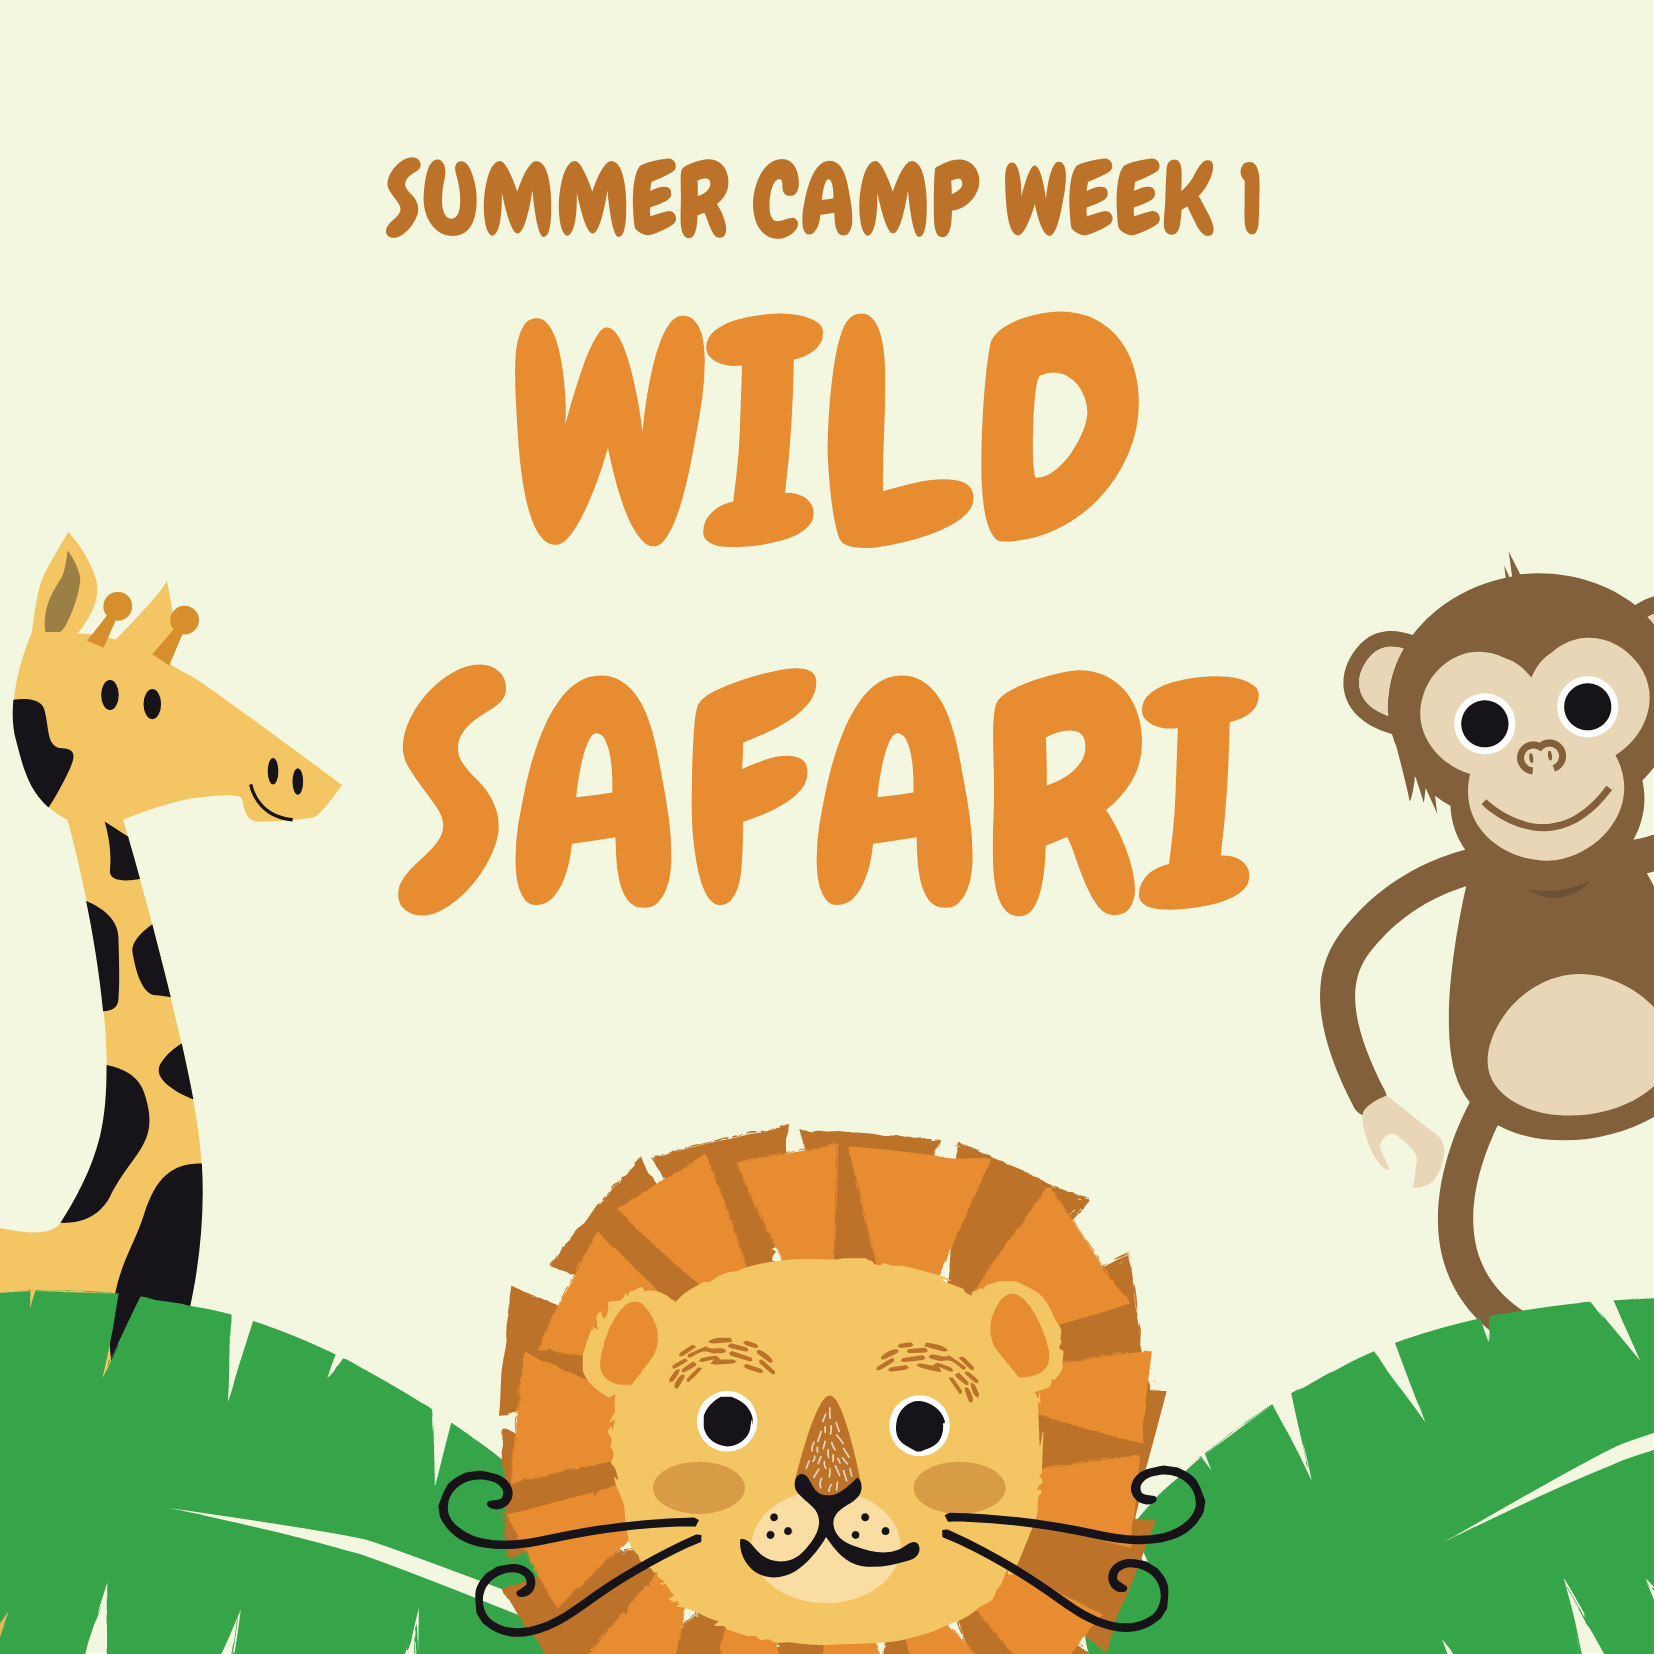 Week One (6/20 - 6/24): WILD SAFARI